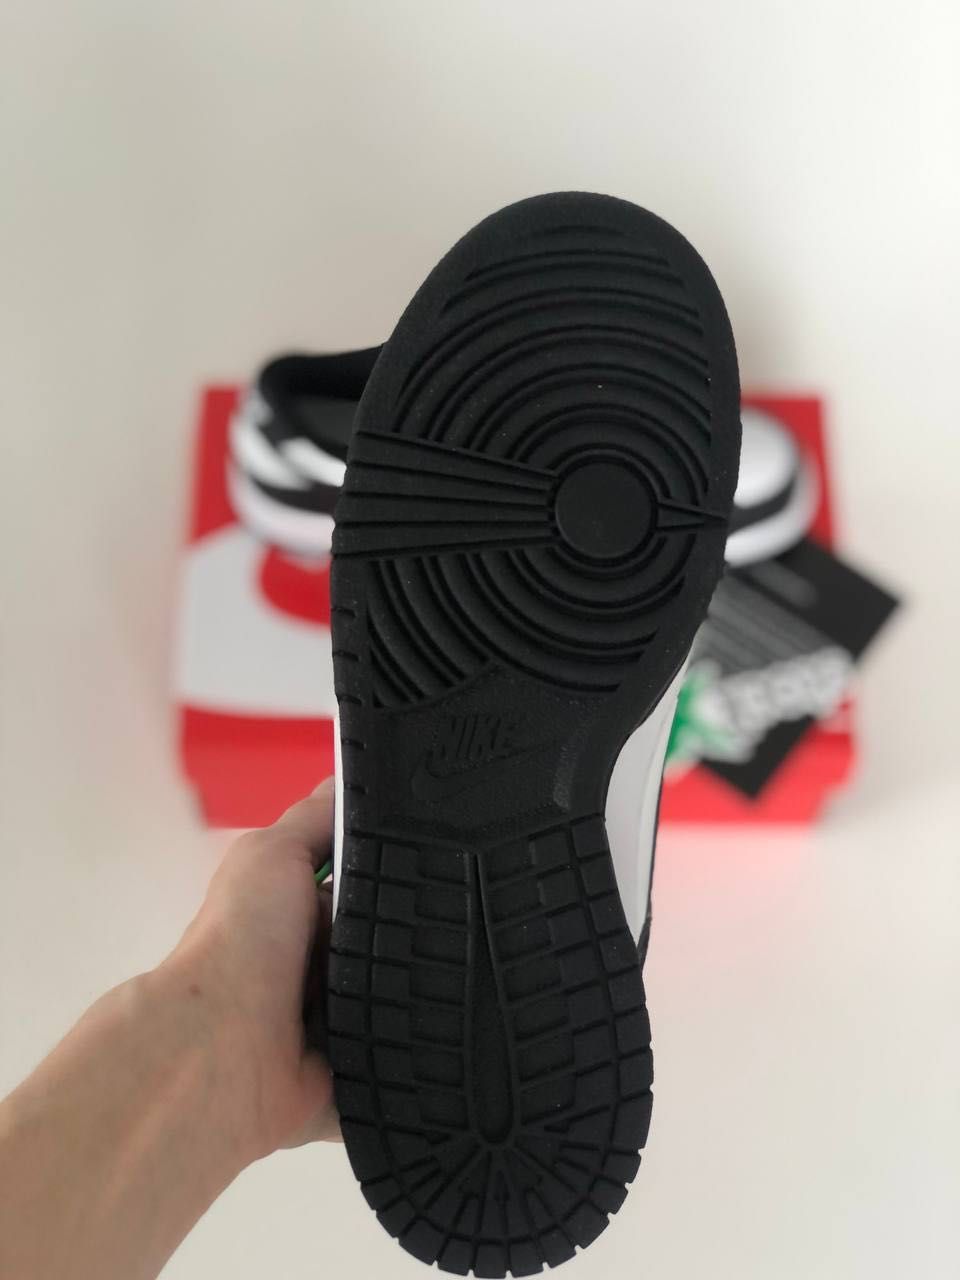 Мужские кроссовки Nike SB Dunk Black&white. Размеры 39-45